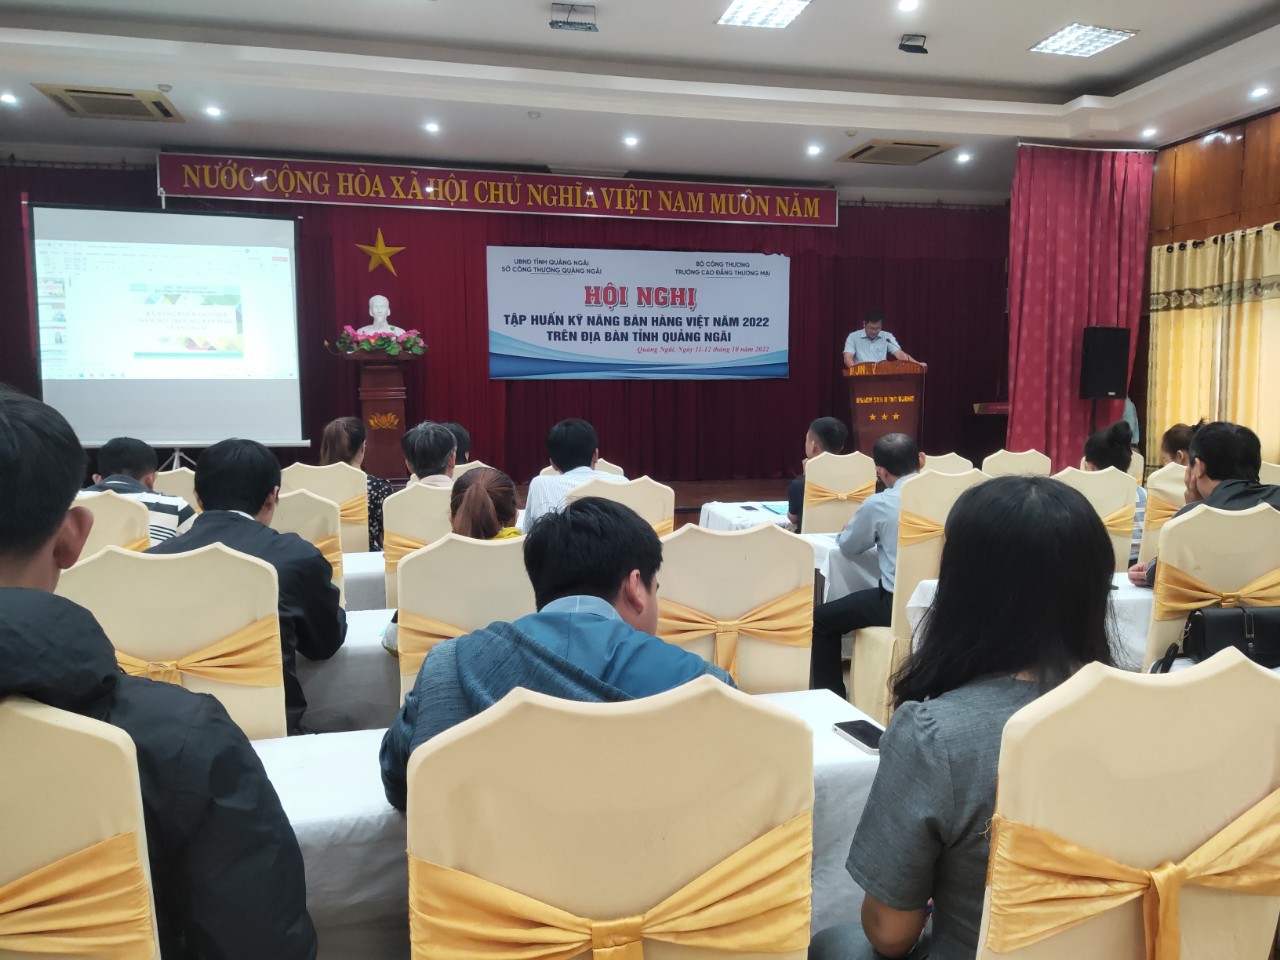 Khai giảng lớp tập huấn kỹ năng bán hàng Việt năm 2022 trên địa bàn tỉnh Quảng Ngãi